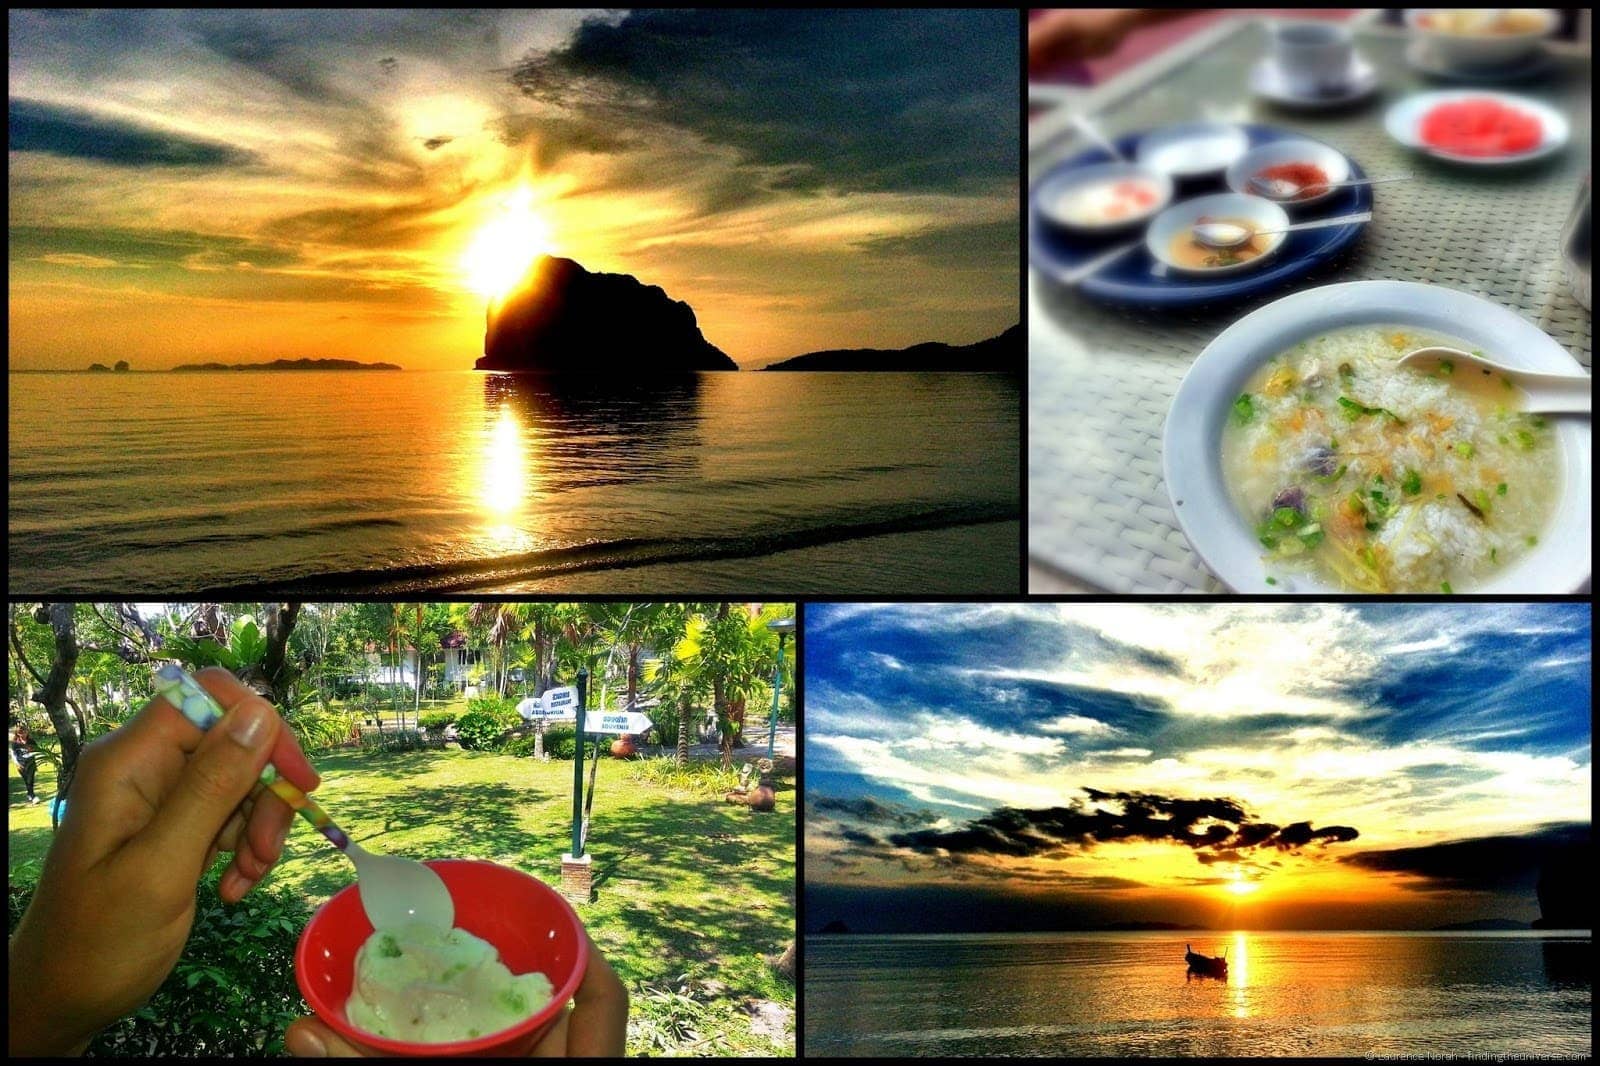 Laytrang resort Pak Meng beach collage 2